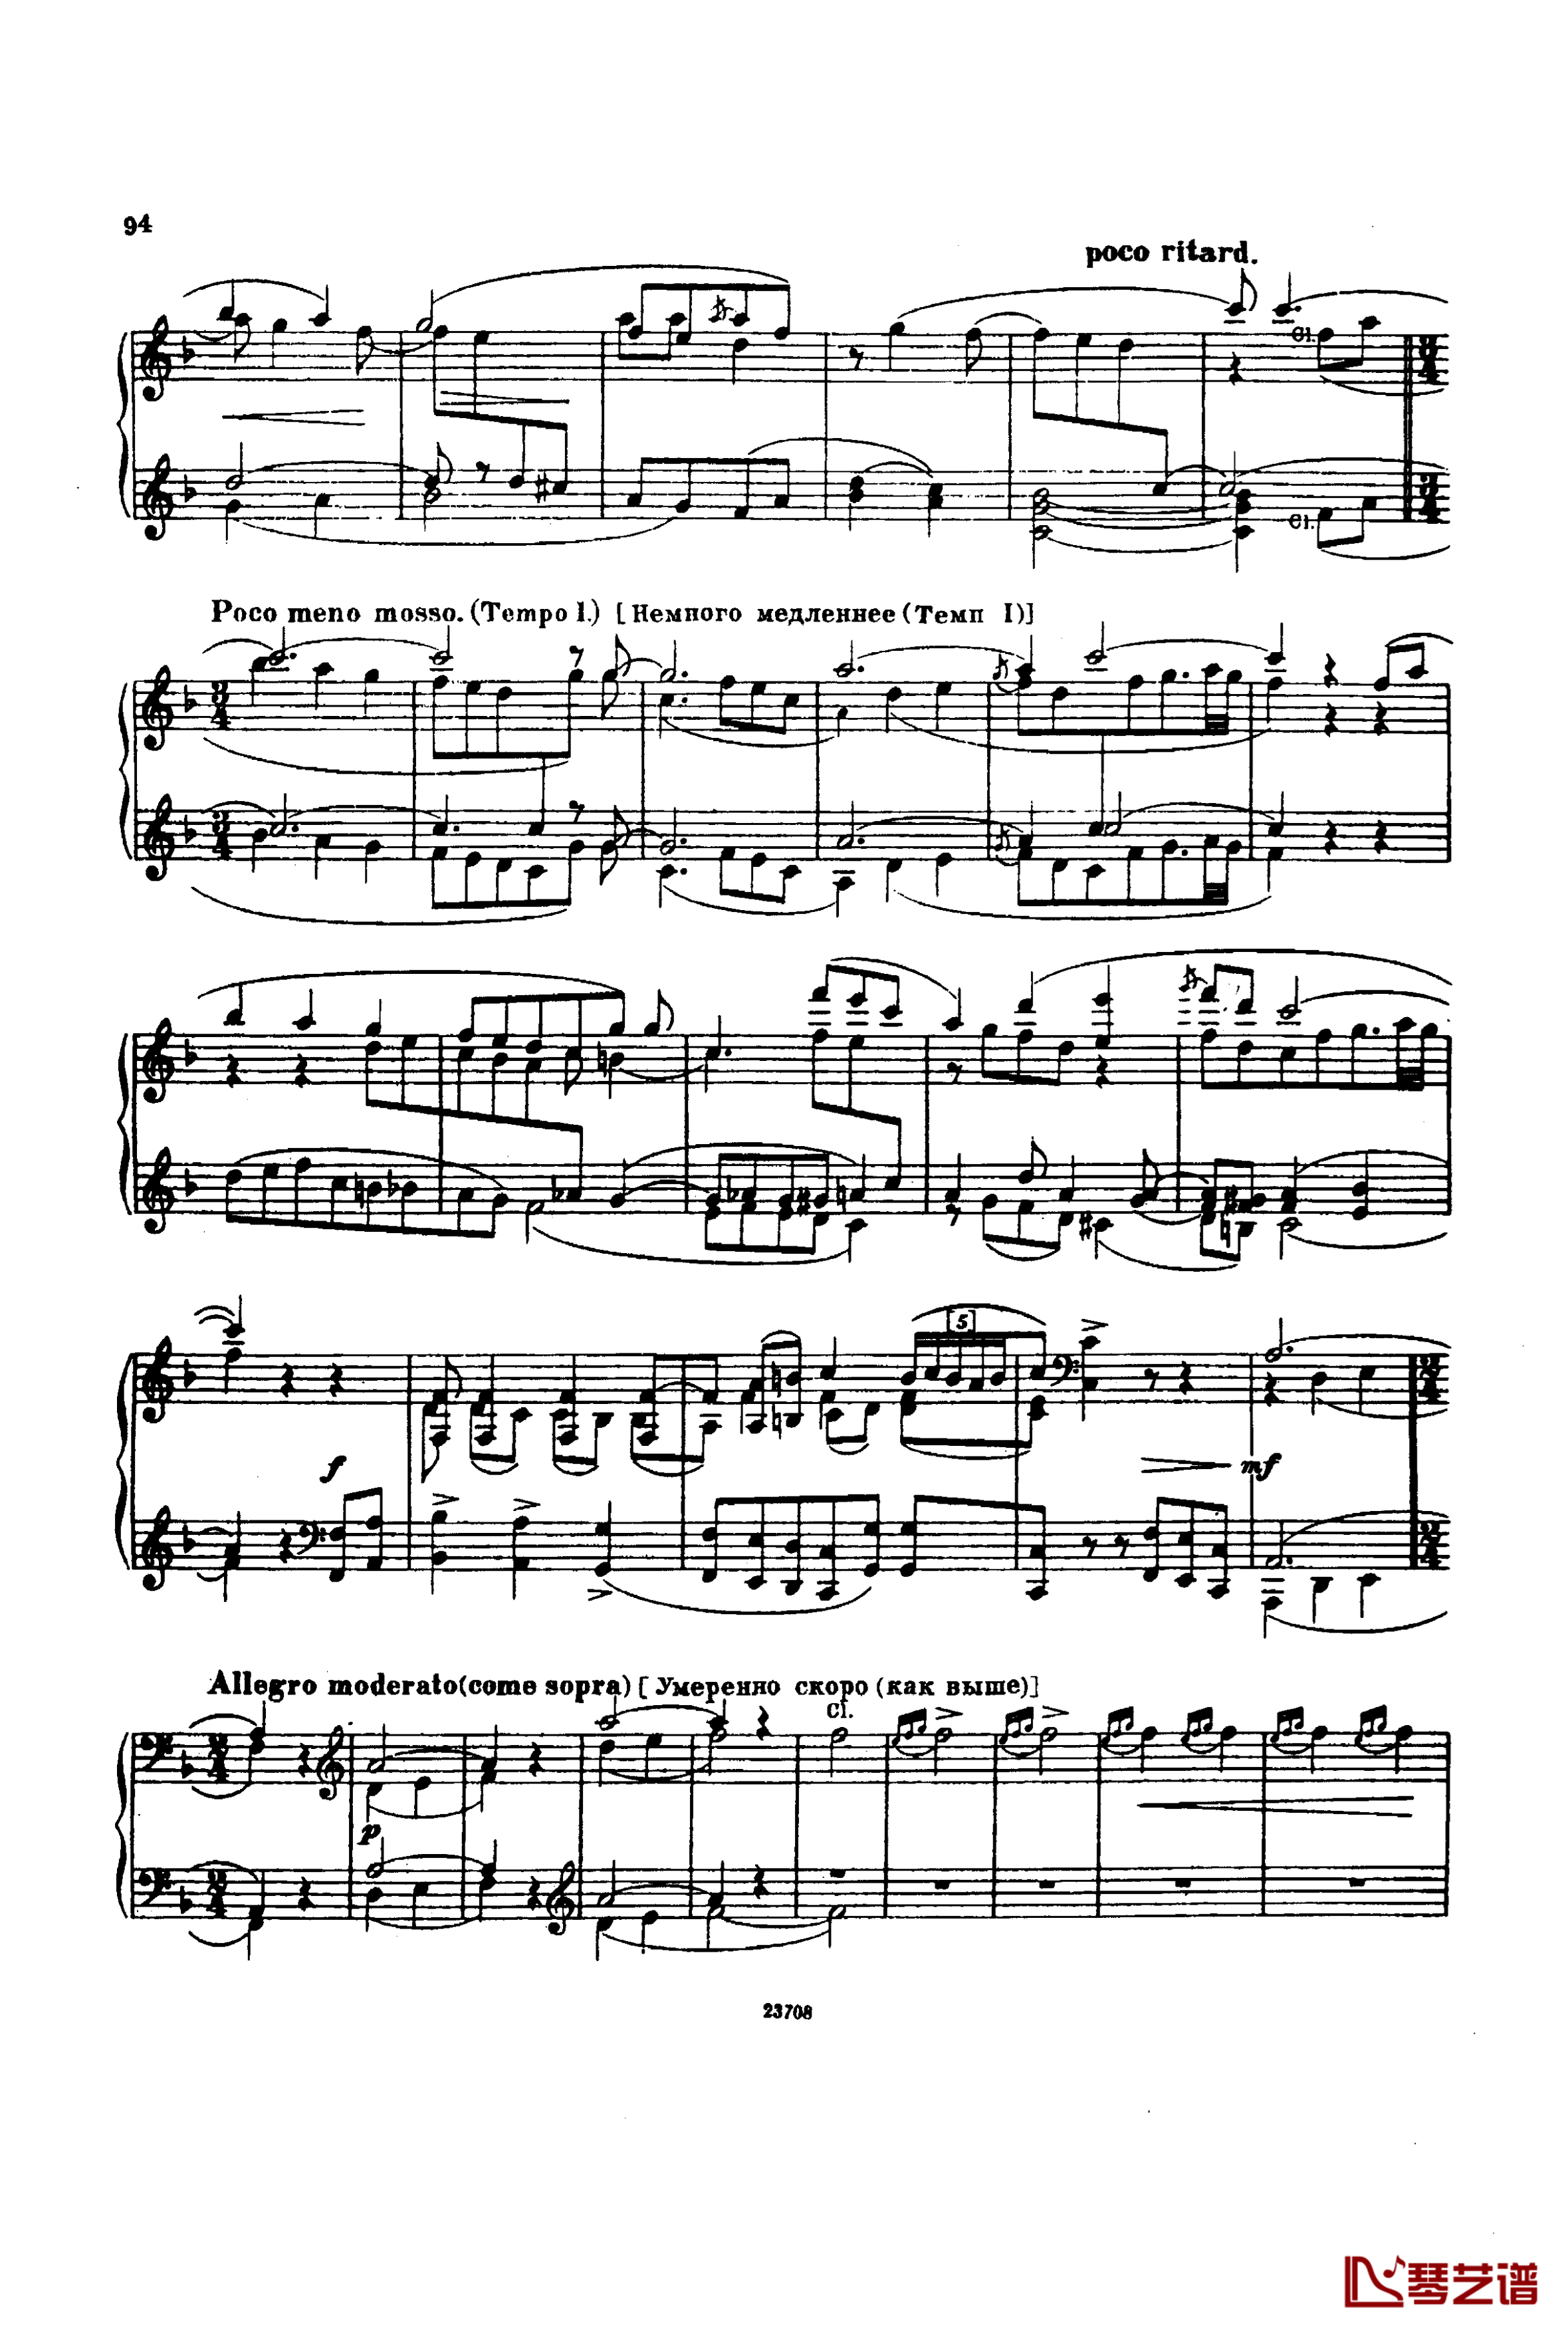 卡玛林斯卡亚幻想曲钢琴谱-格林卡8